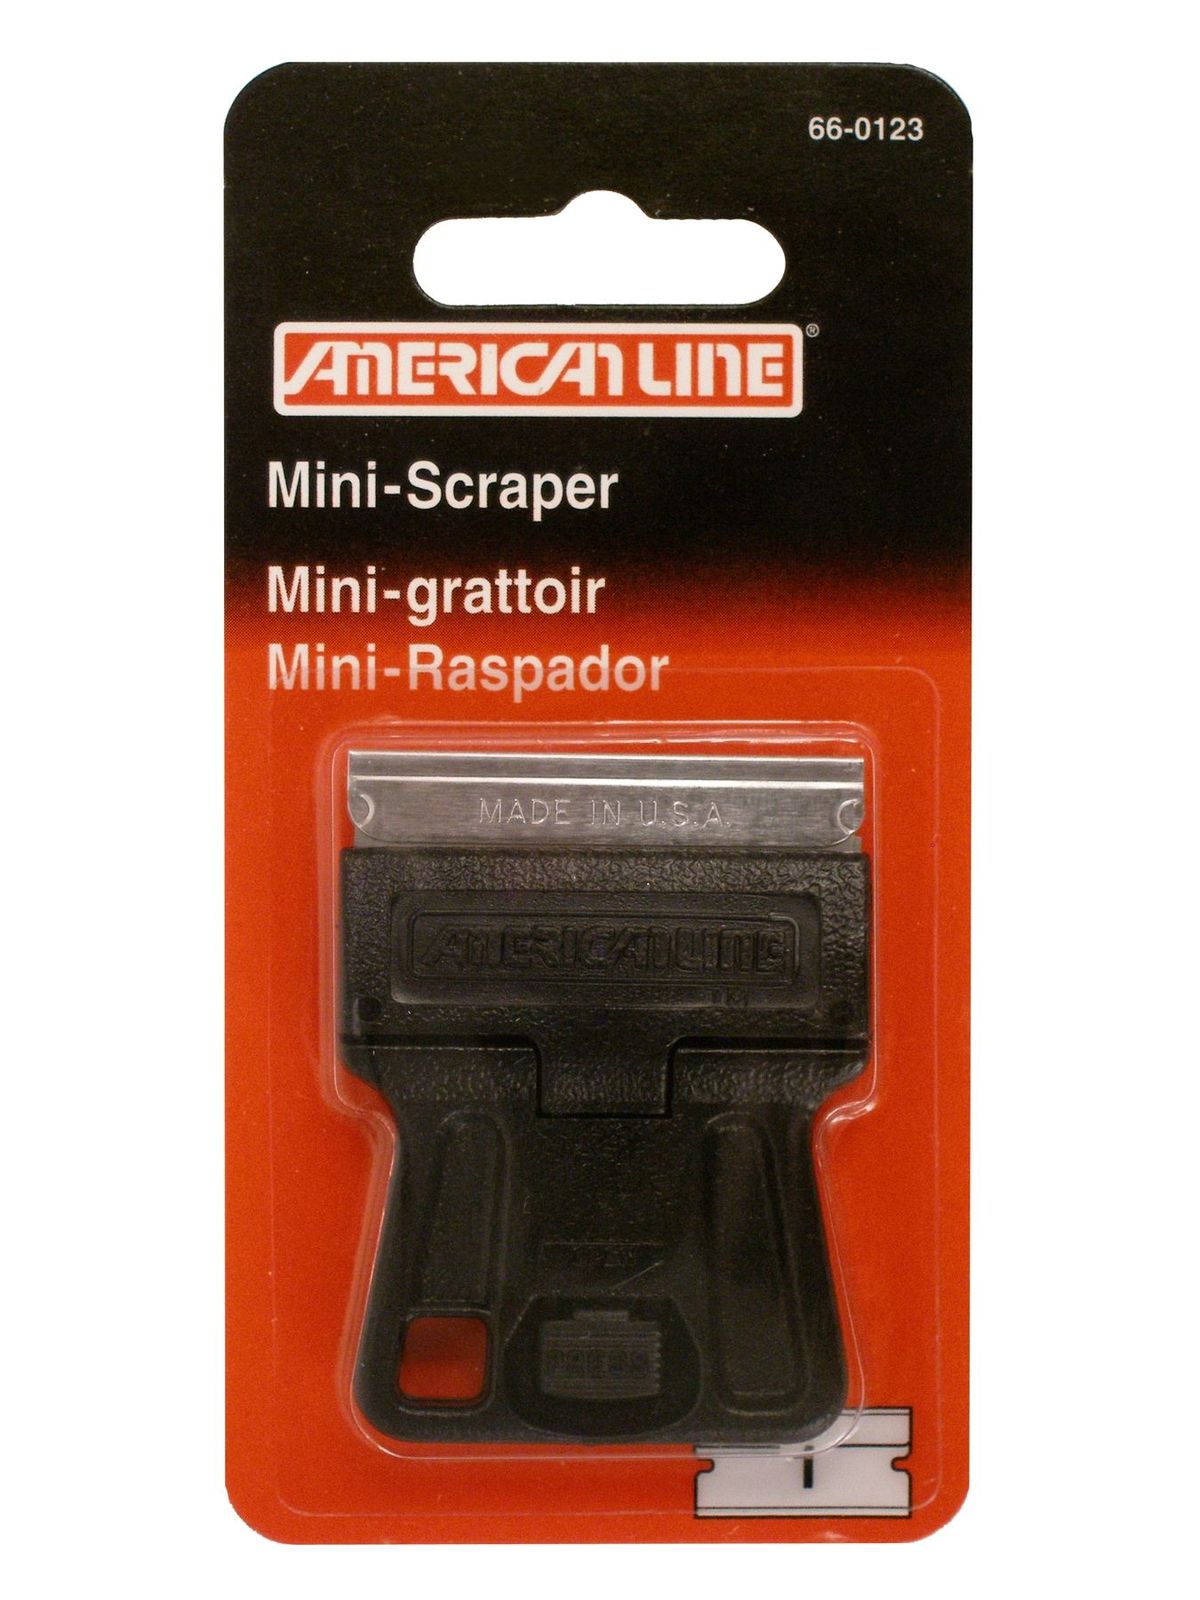 Mini-scraper Mini-scraper